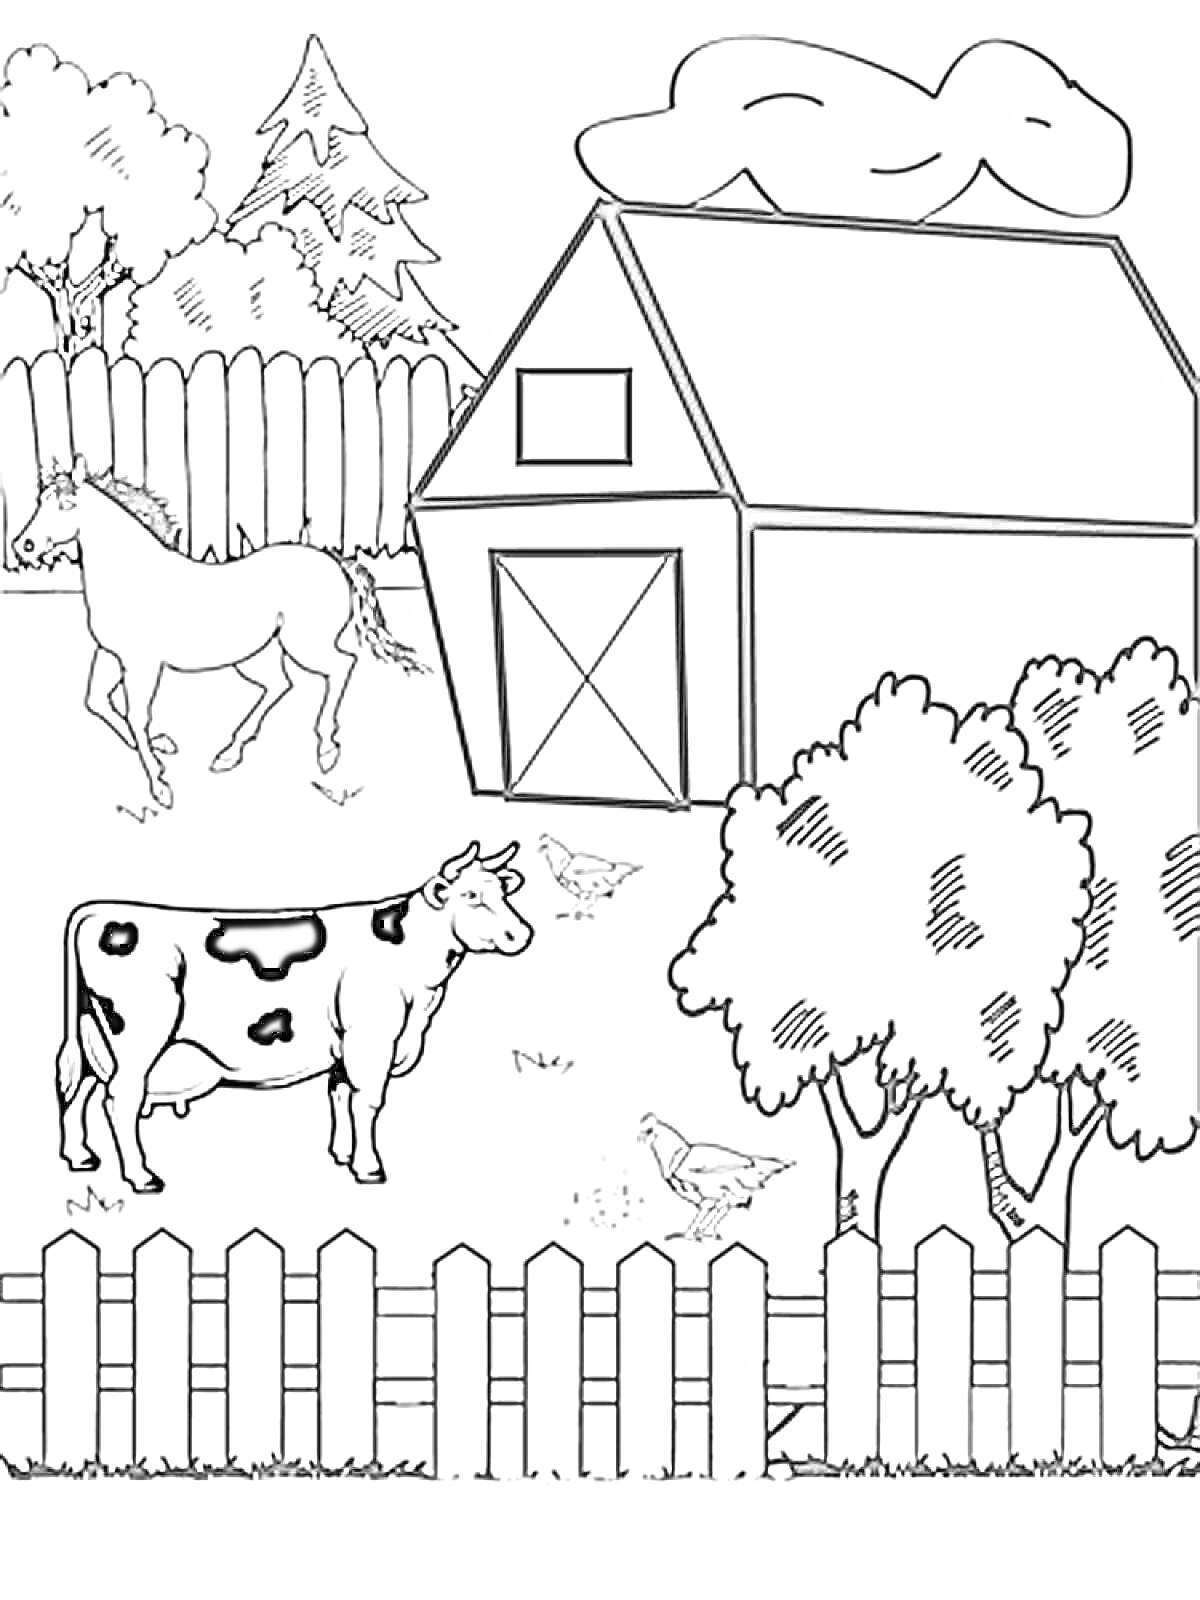 Раскраска Ферма с коровой, лошадью, курицами, сараем, деревьями и забором